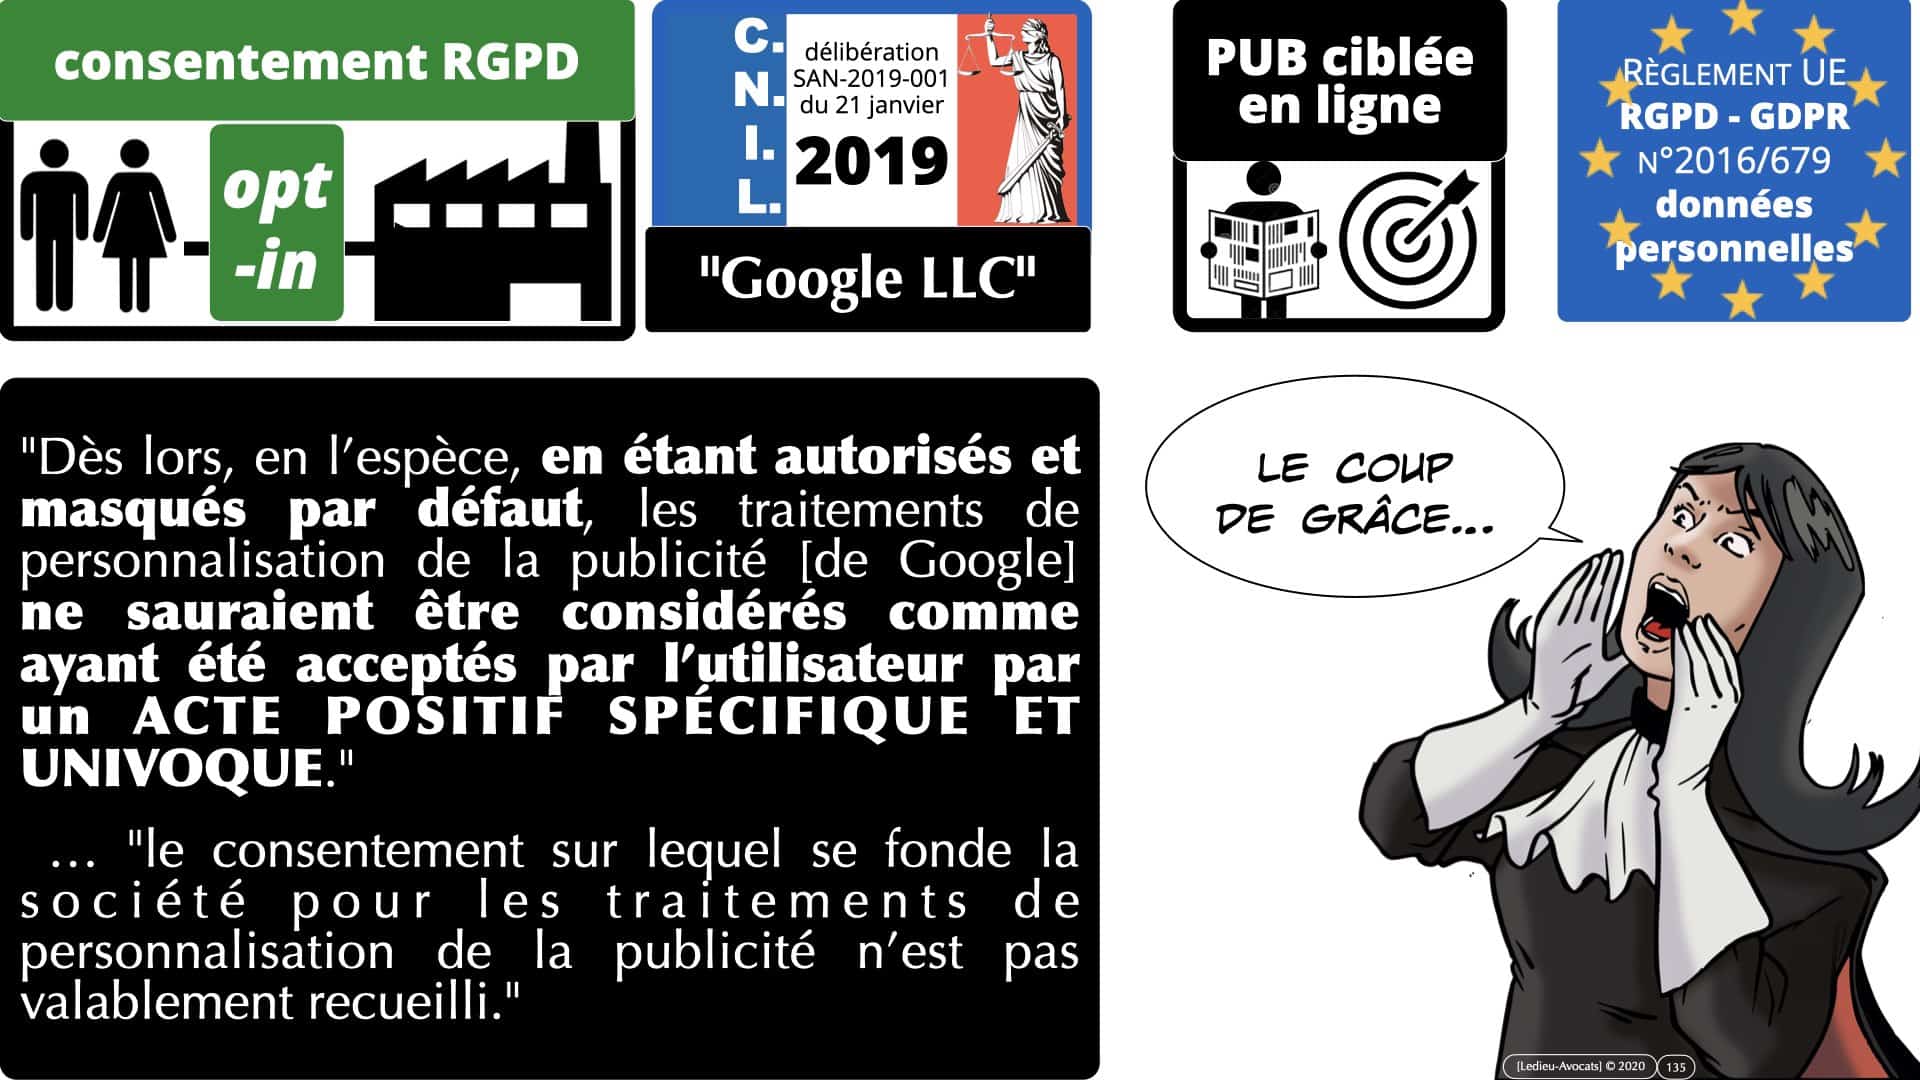 RGPD e-Privacy données personnelles jurisprudence formation Lamy Les Echos 10-02-2021 ©Ledieu-Avocats.135